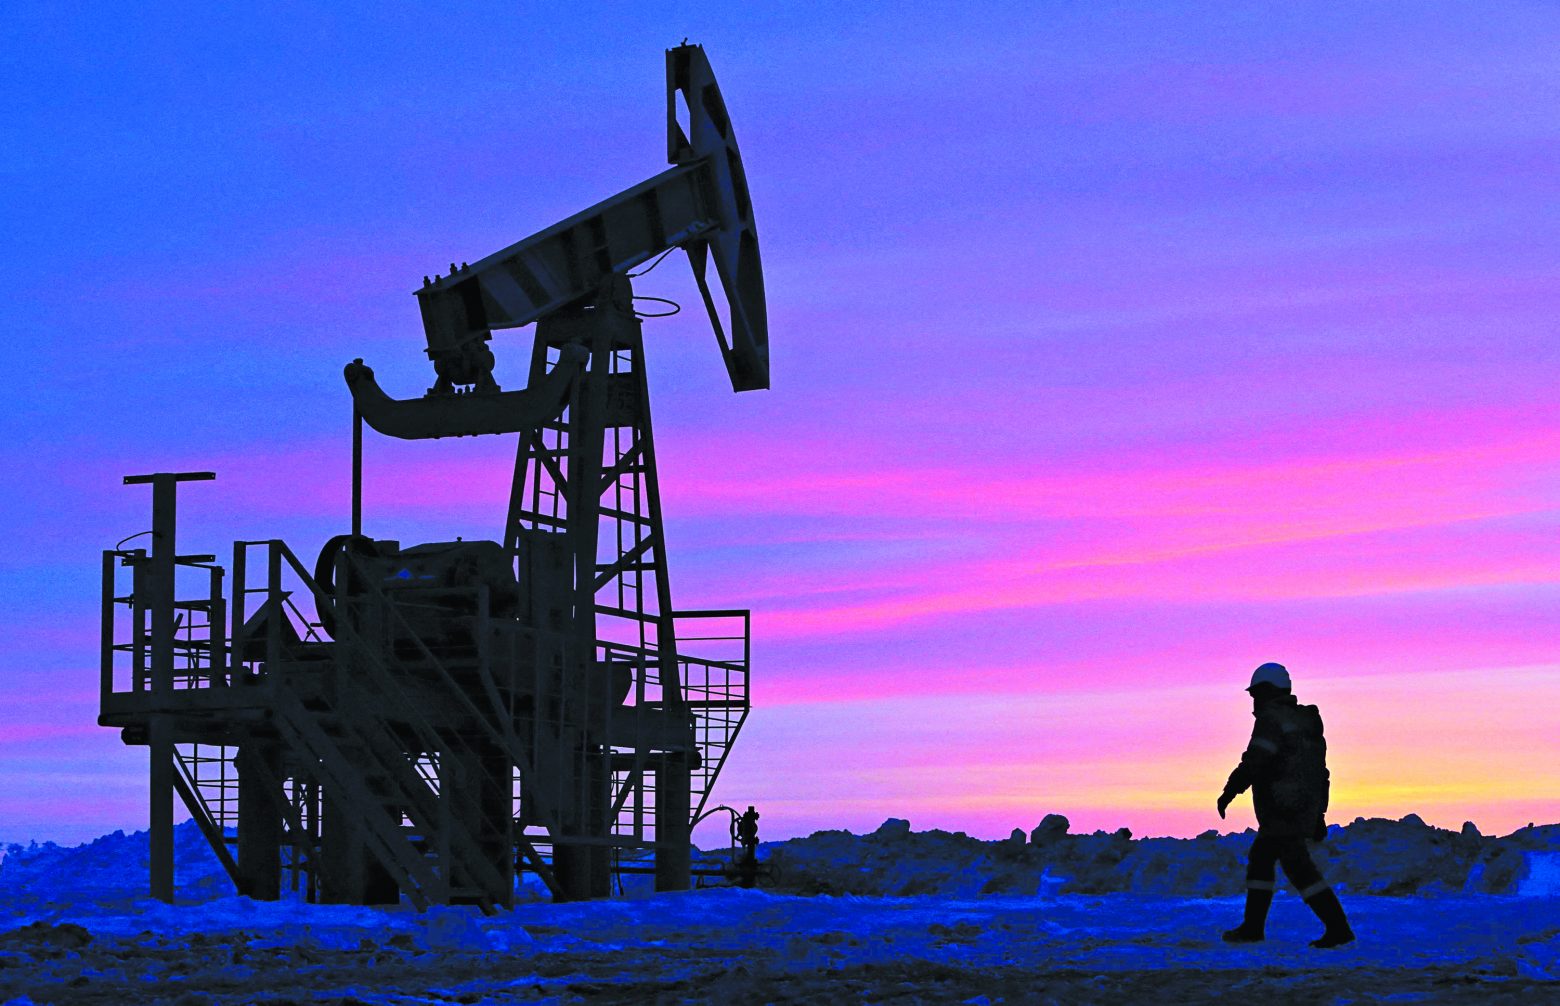 Πετρέλαιο: Υποχωρεί κάτω από τα 100 δολάρια το βαρέλι